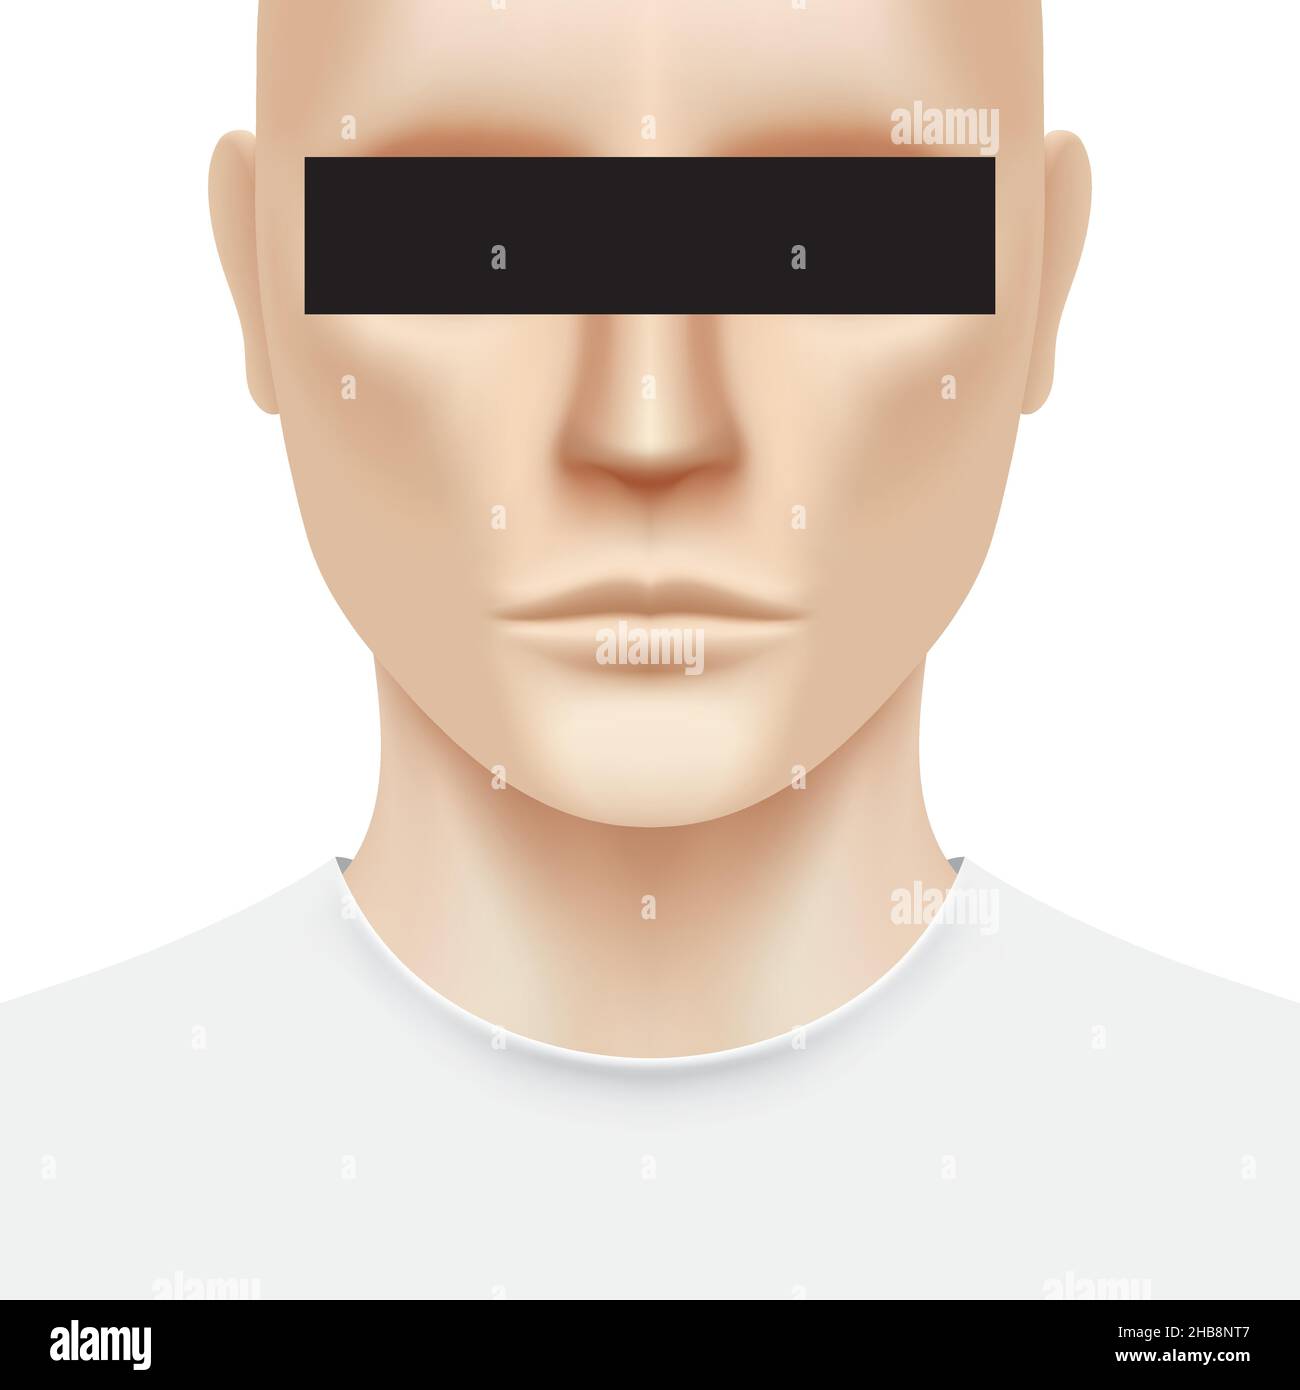 Un homme blanc avec une barre noire couvrant ses yeux, isolé sur fond blanc.Illustration du vecteur portrait d'une personne inconnue. Illustration de Vecteur